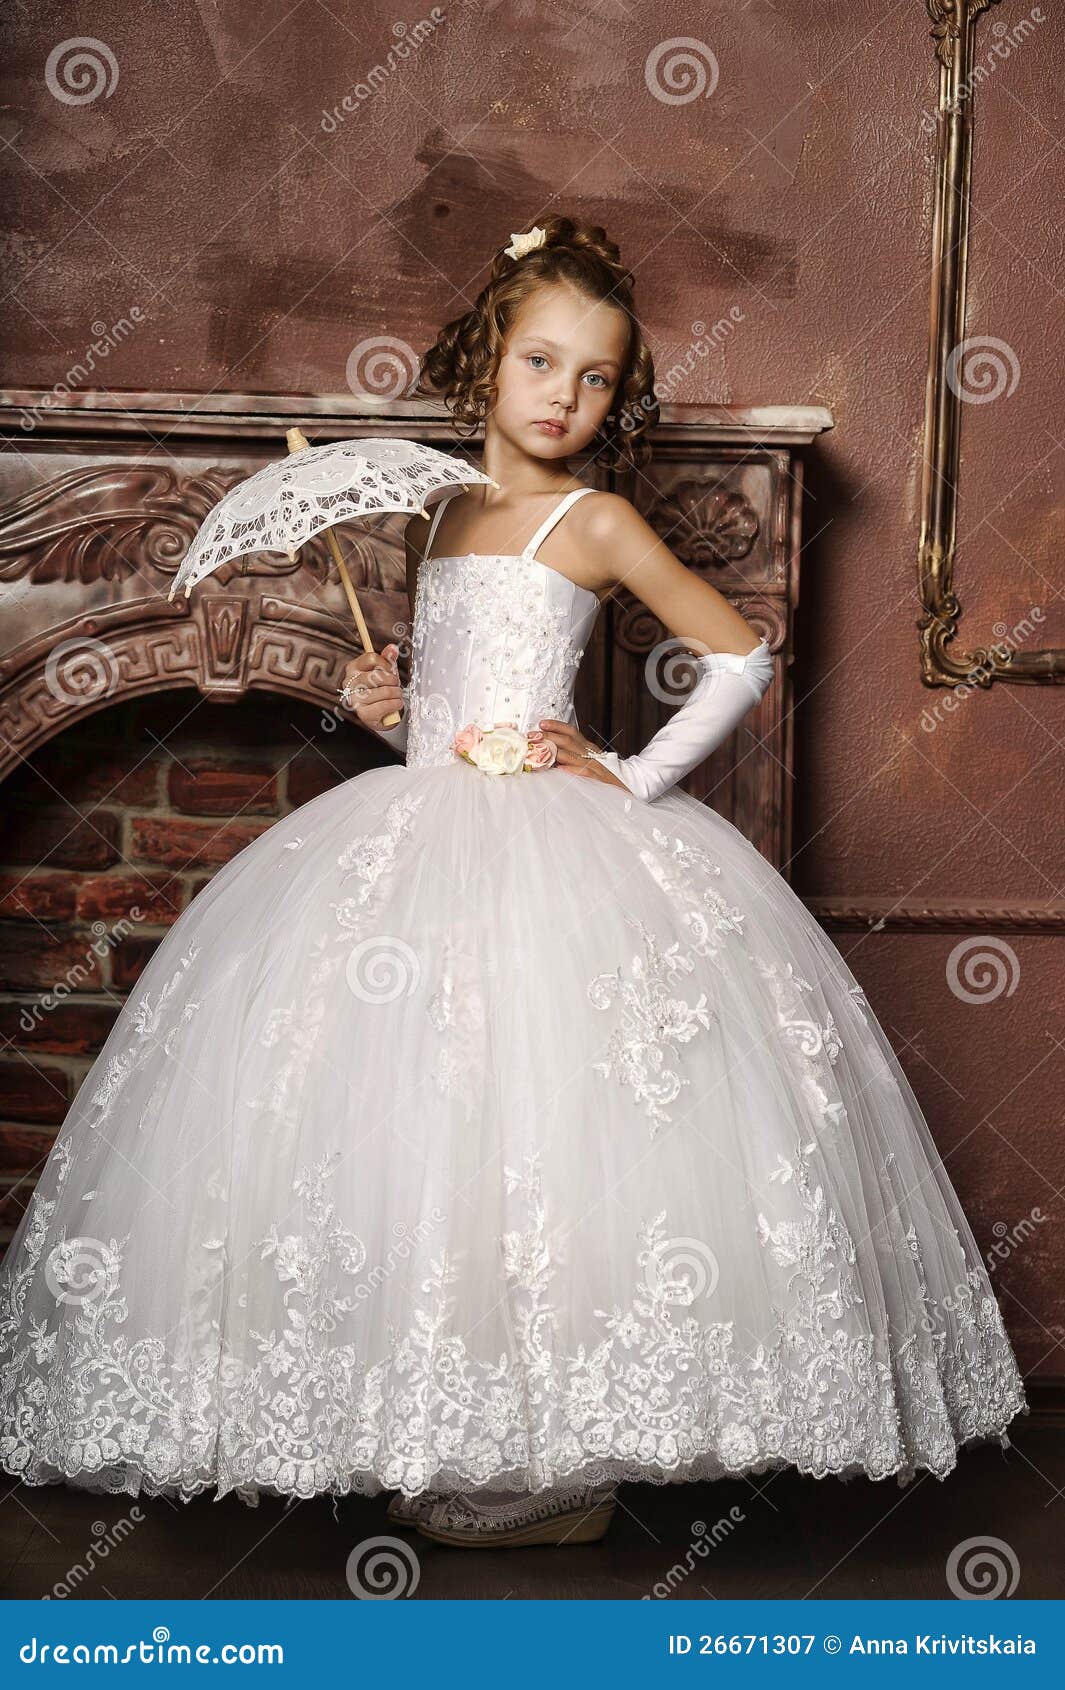 wedding dress for little girls